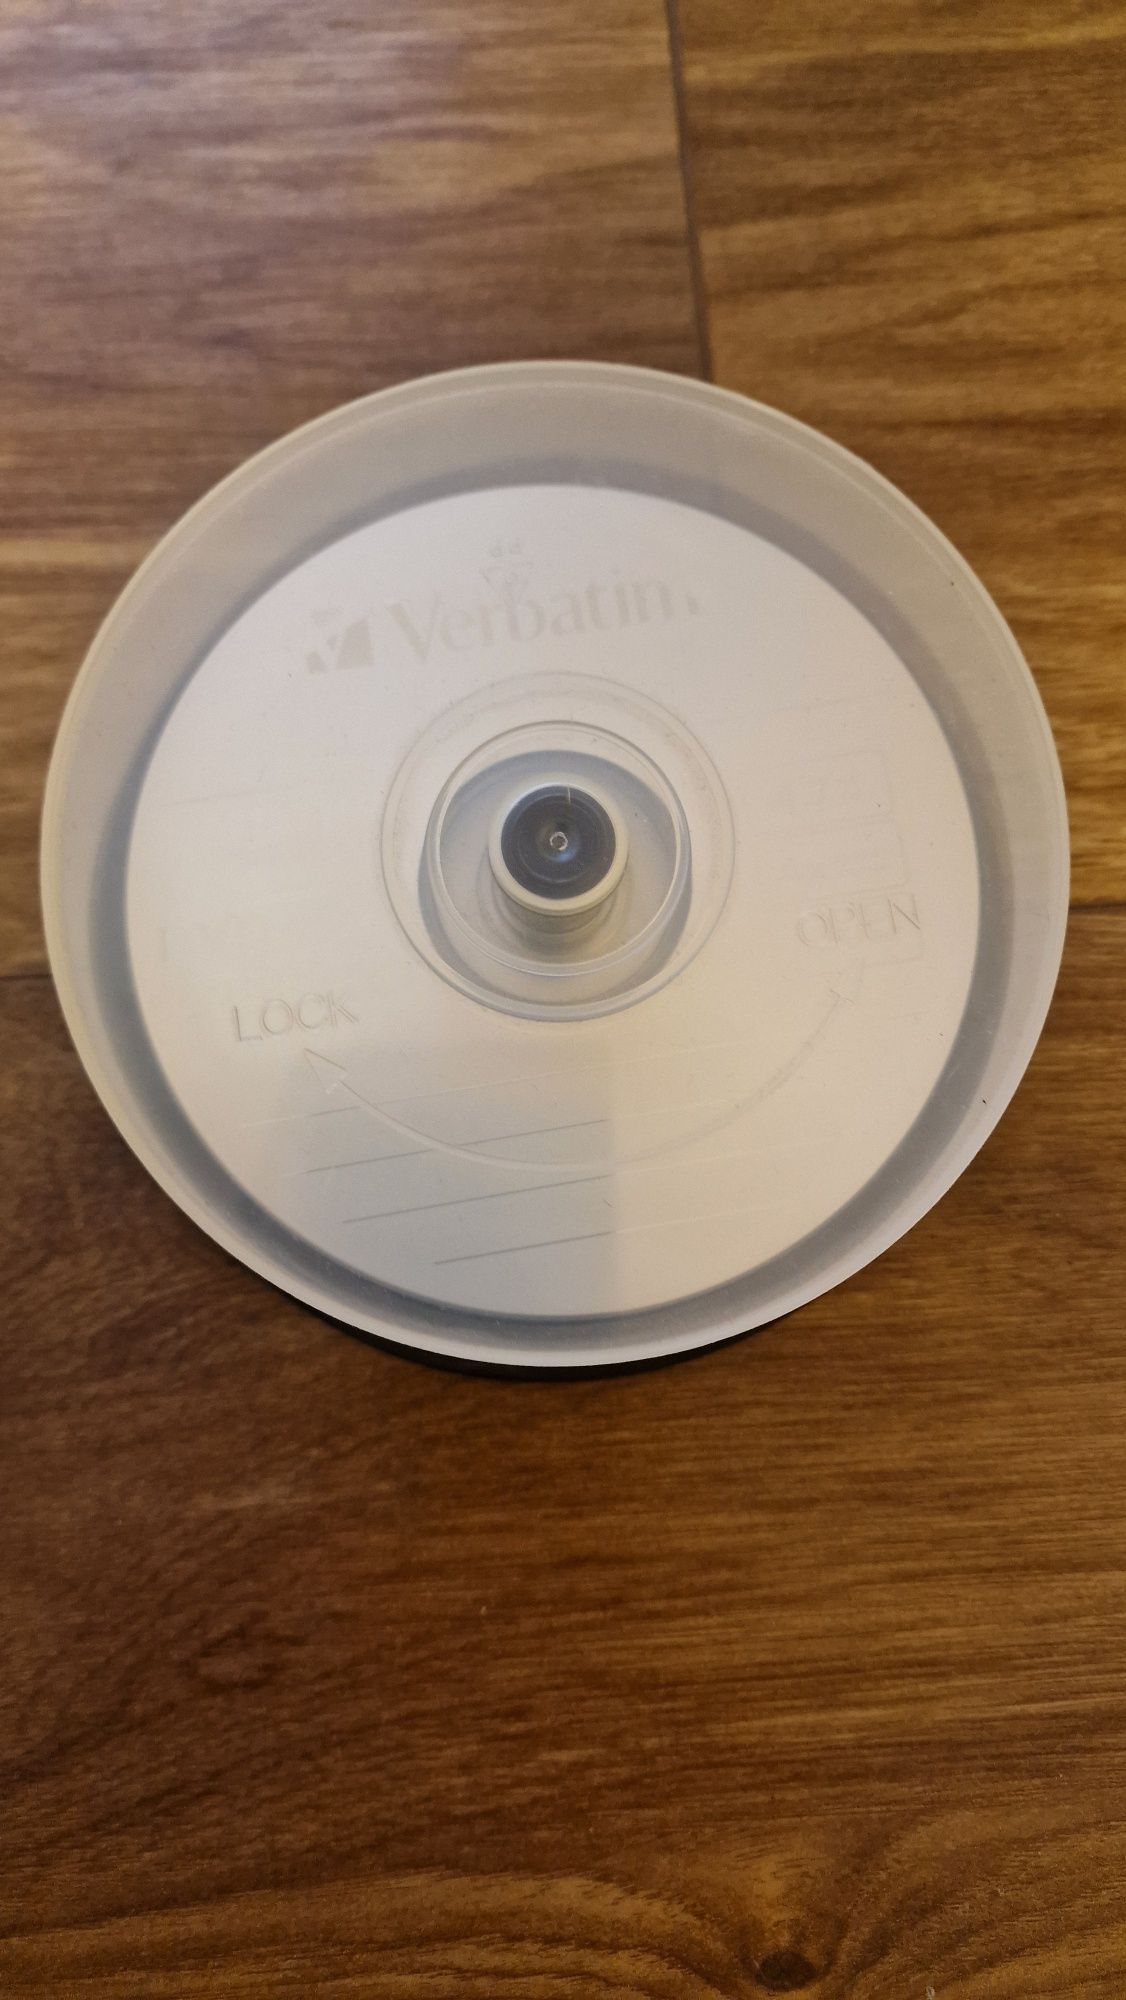 Płyty Verbatim DVD-RW - 15 szt. Opakowanowie